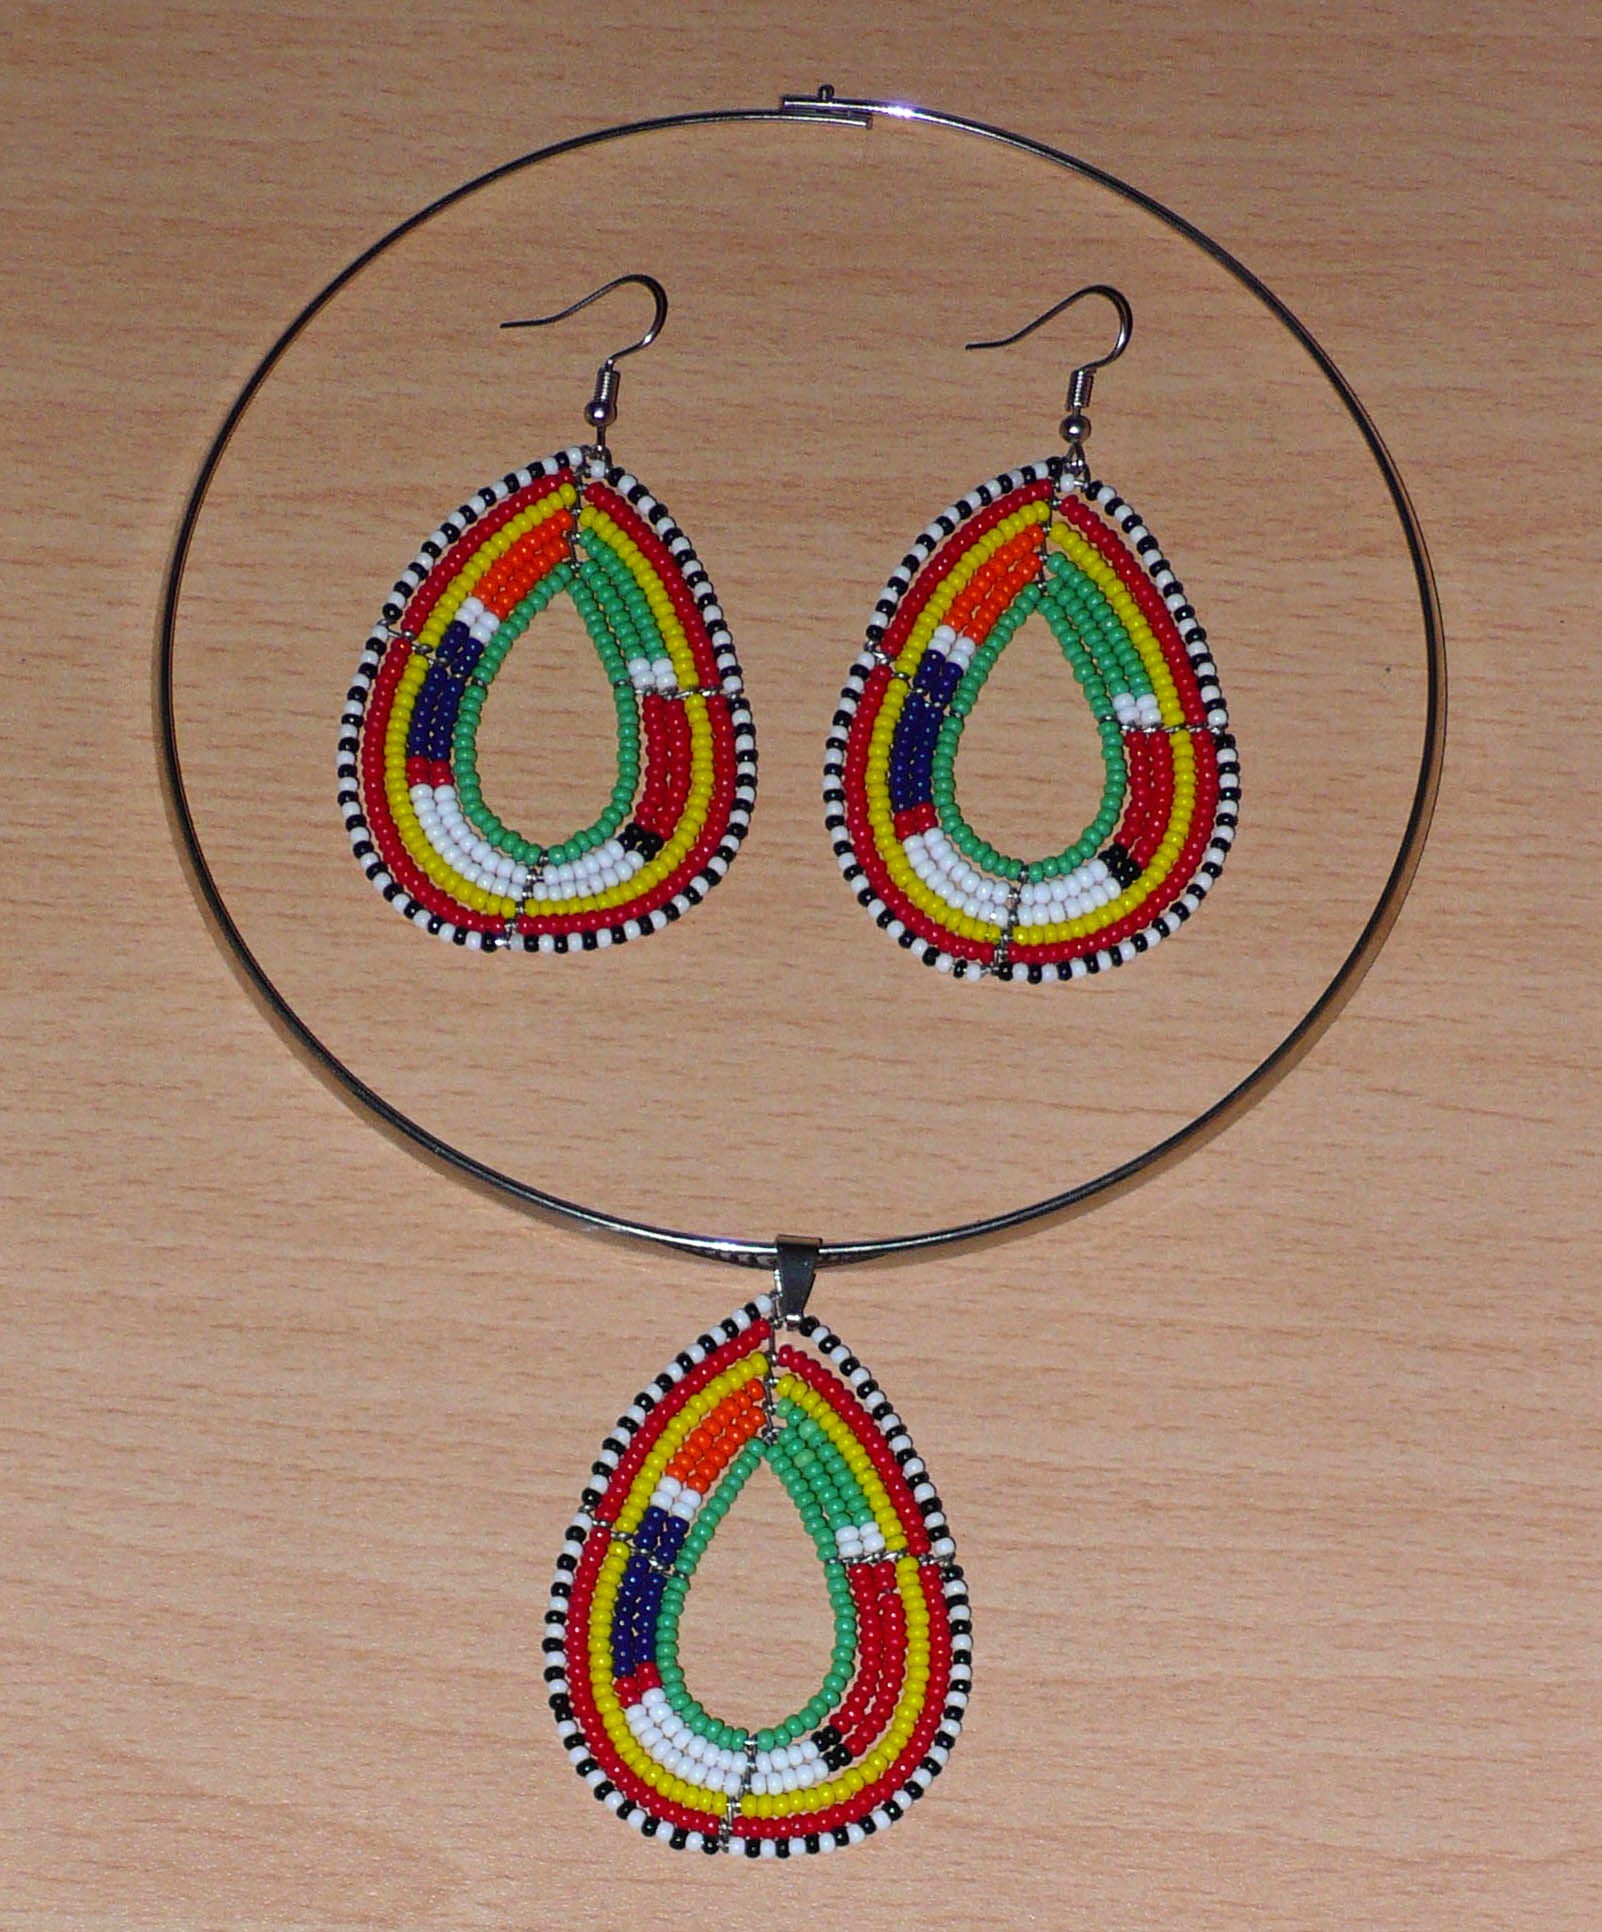 Parure de bijoux africains à motifs ethniques Massai composée d'un collier ras-de-cou orné d'un pendentif en forme de goutte, et d'une paire de boucles d'oreilles assorties faites de perles de rocaille vertes et multicolores.